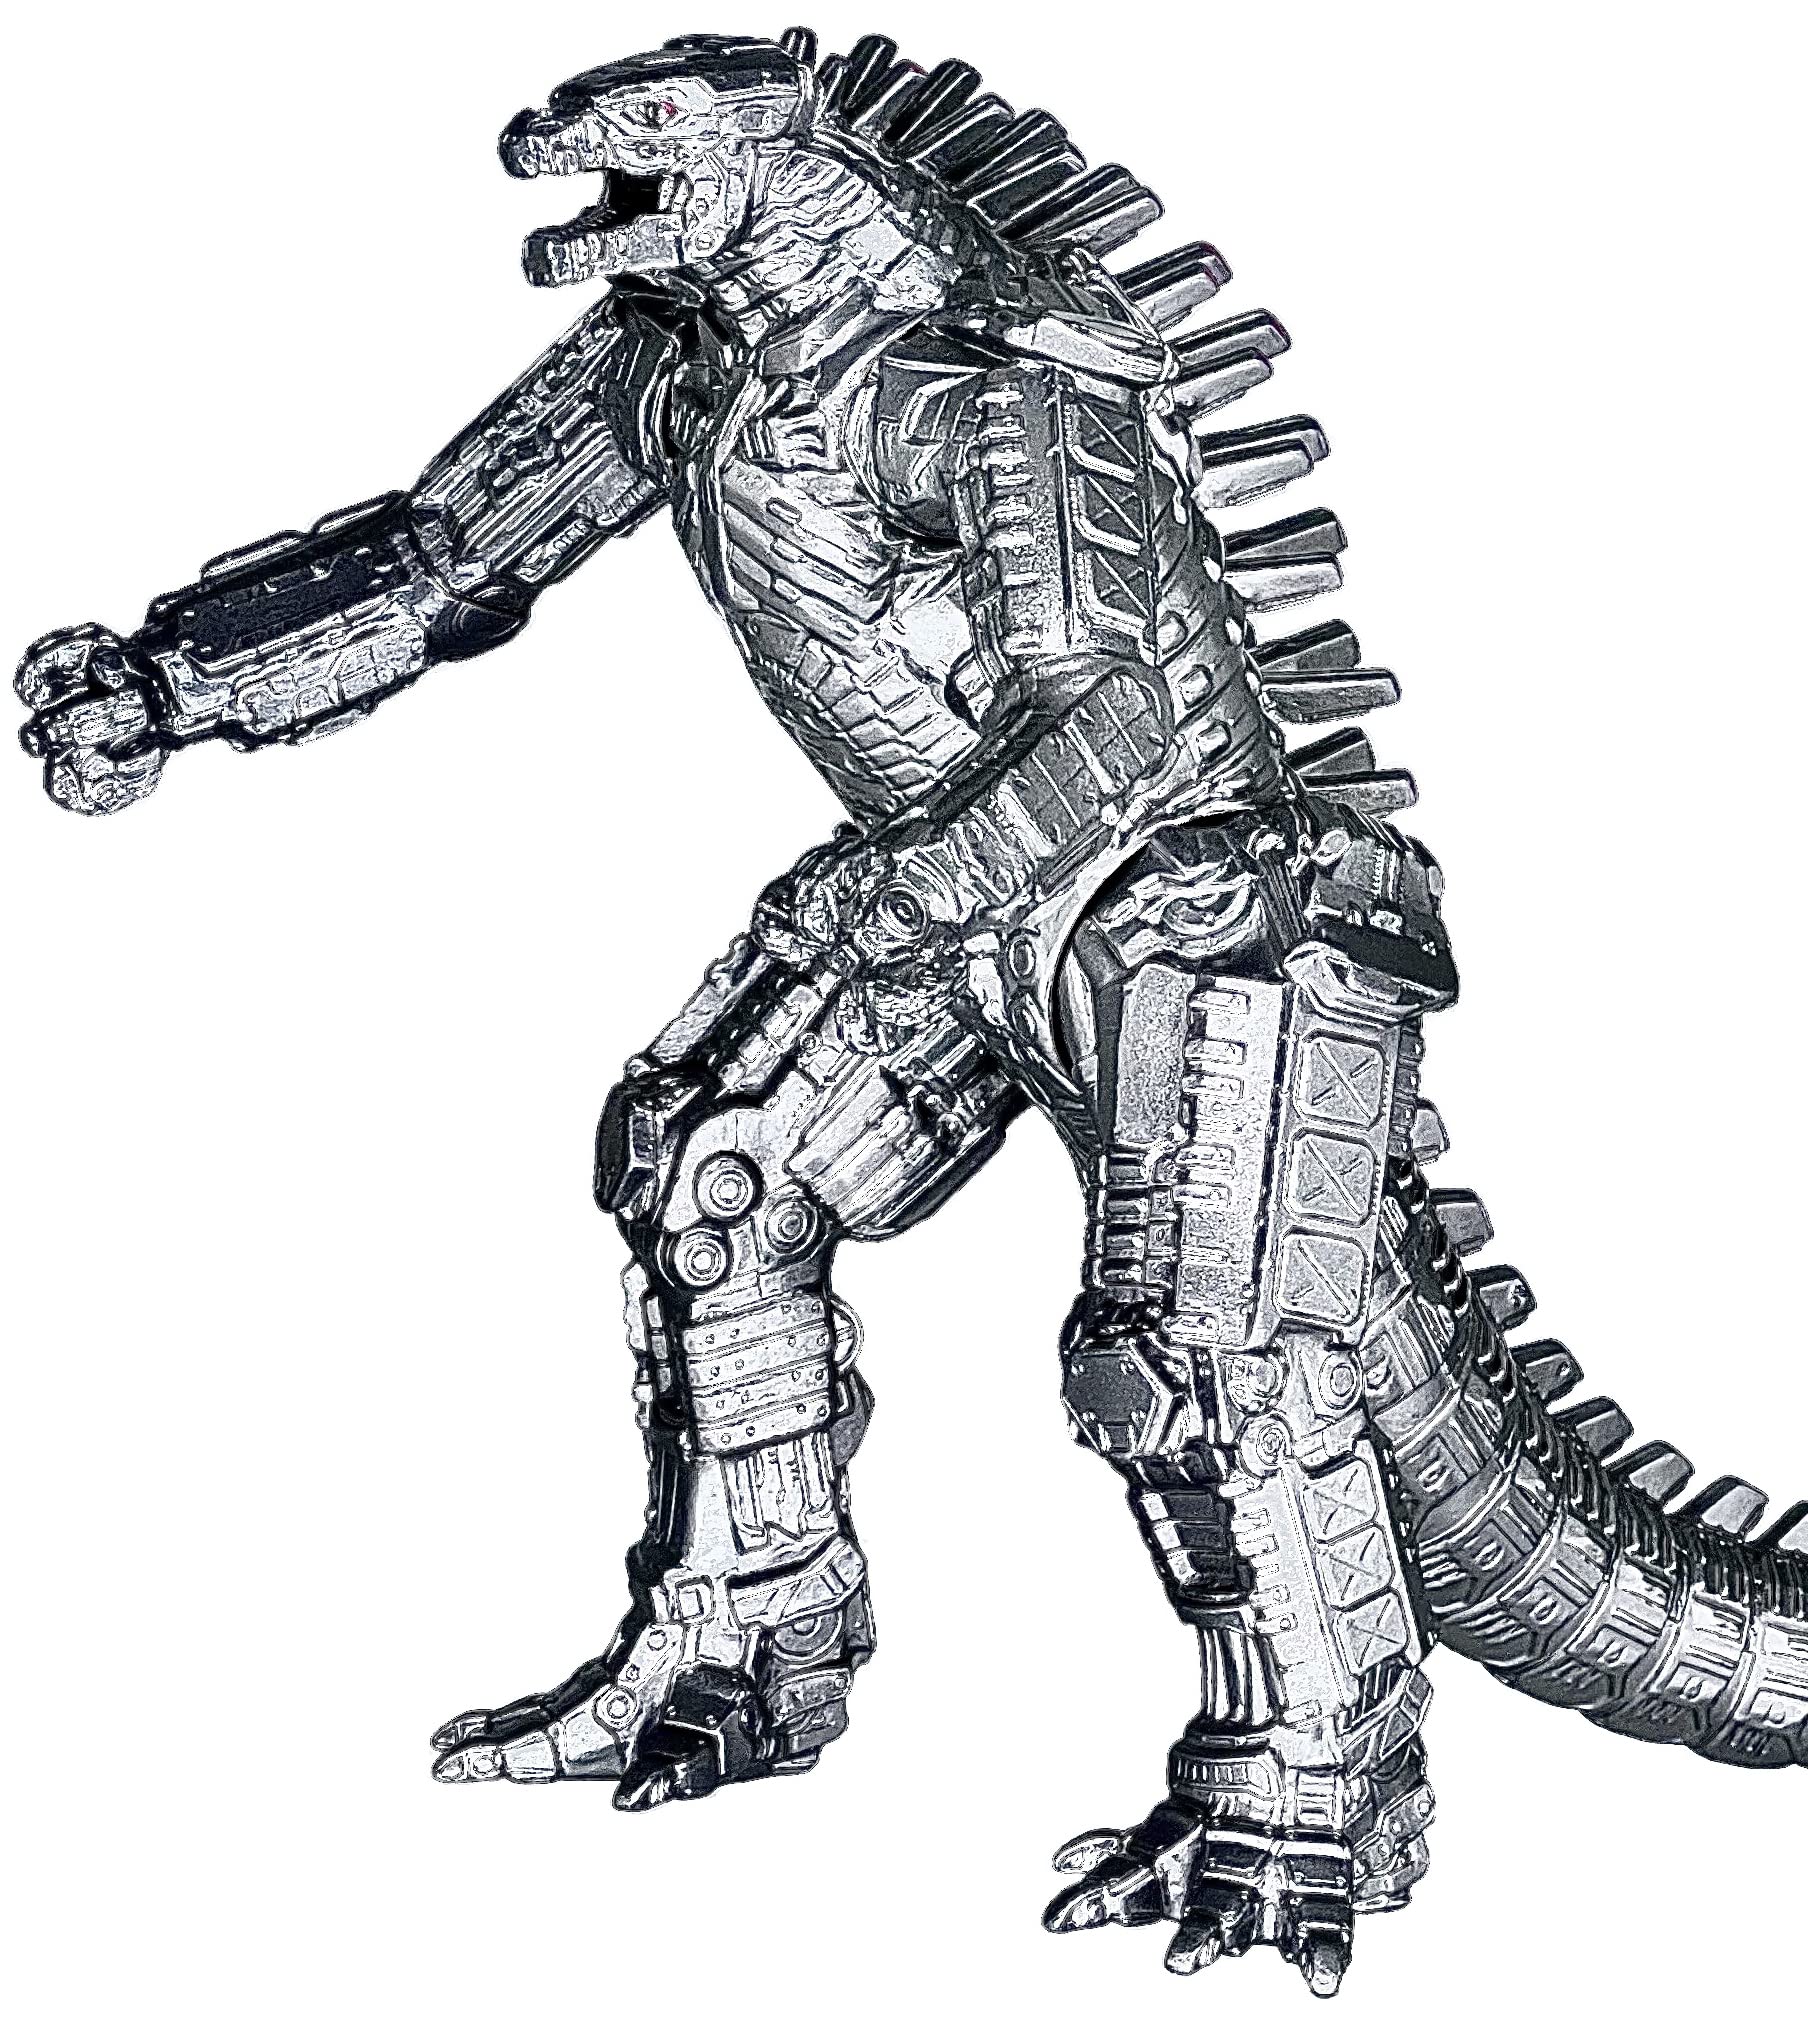 MechaGodzilla - một biểu tượng về sức mạnh và kẻ đối đầu đáng sợ của Godzilla. Xem hình này và cảm nhận một trong những chiếc robot hái ra một thành tích khủng khiếp nhất trong tất cả các thể loại phim ảnh.